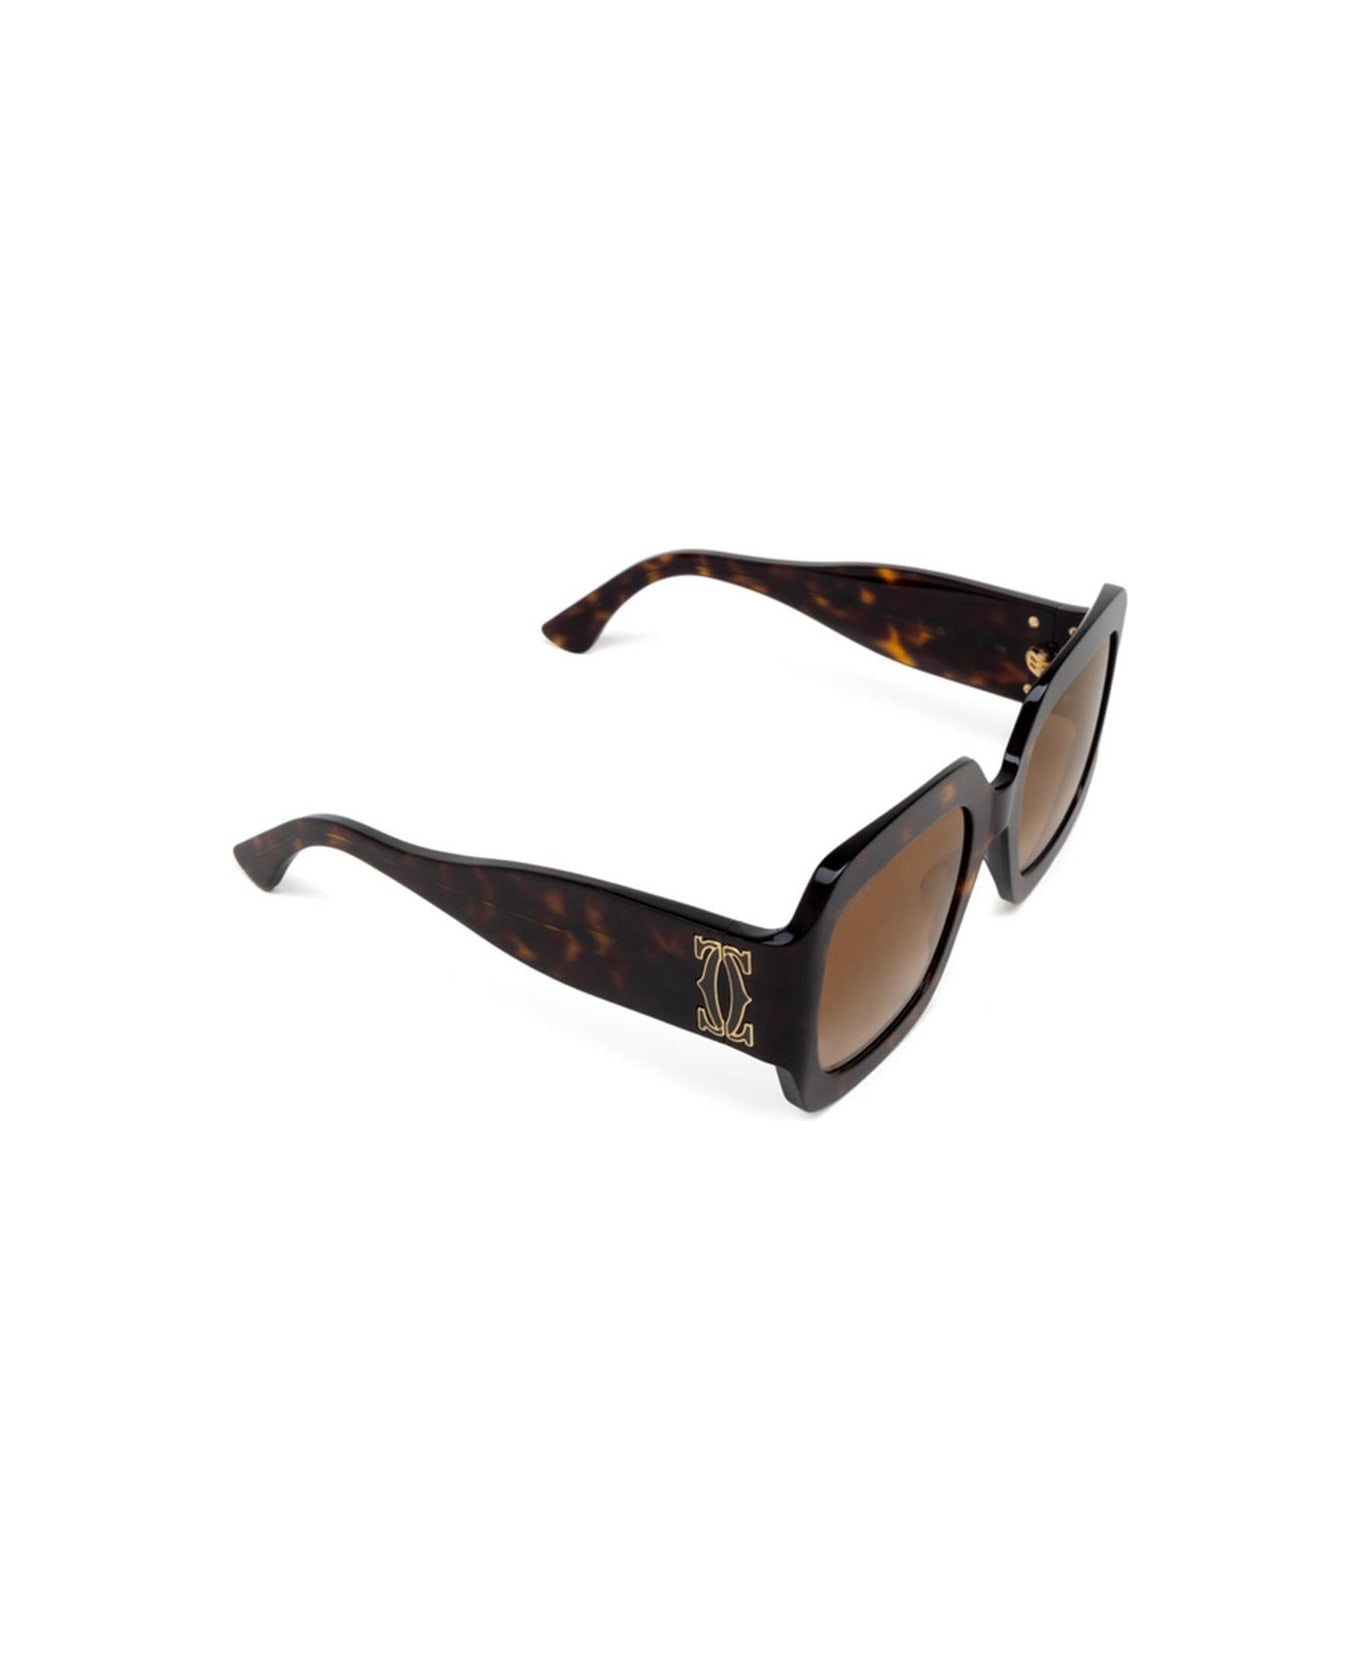 Cartier Eyewear Sunglasses - Havana/Marrone sfumato サングラス